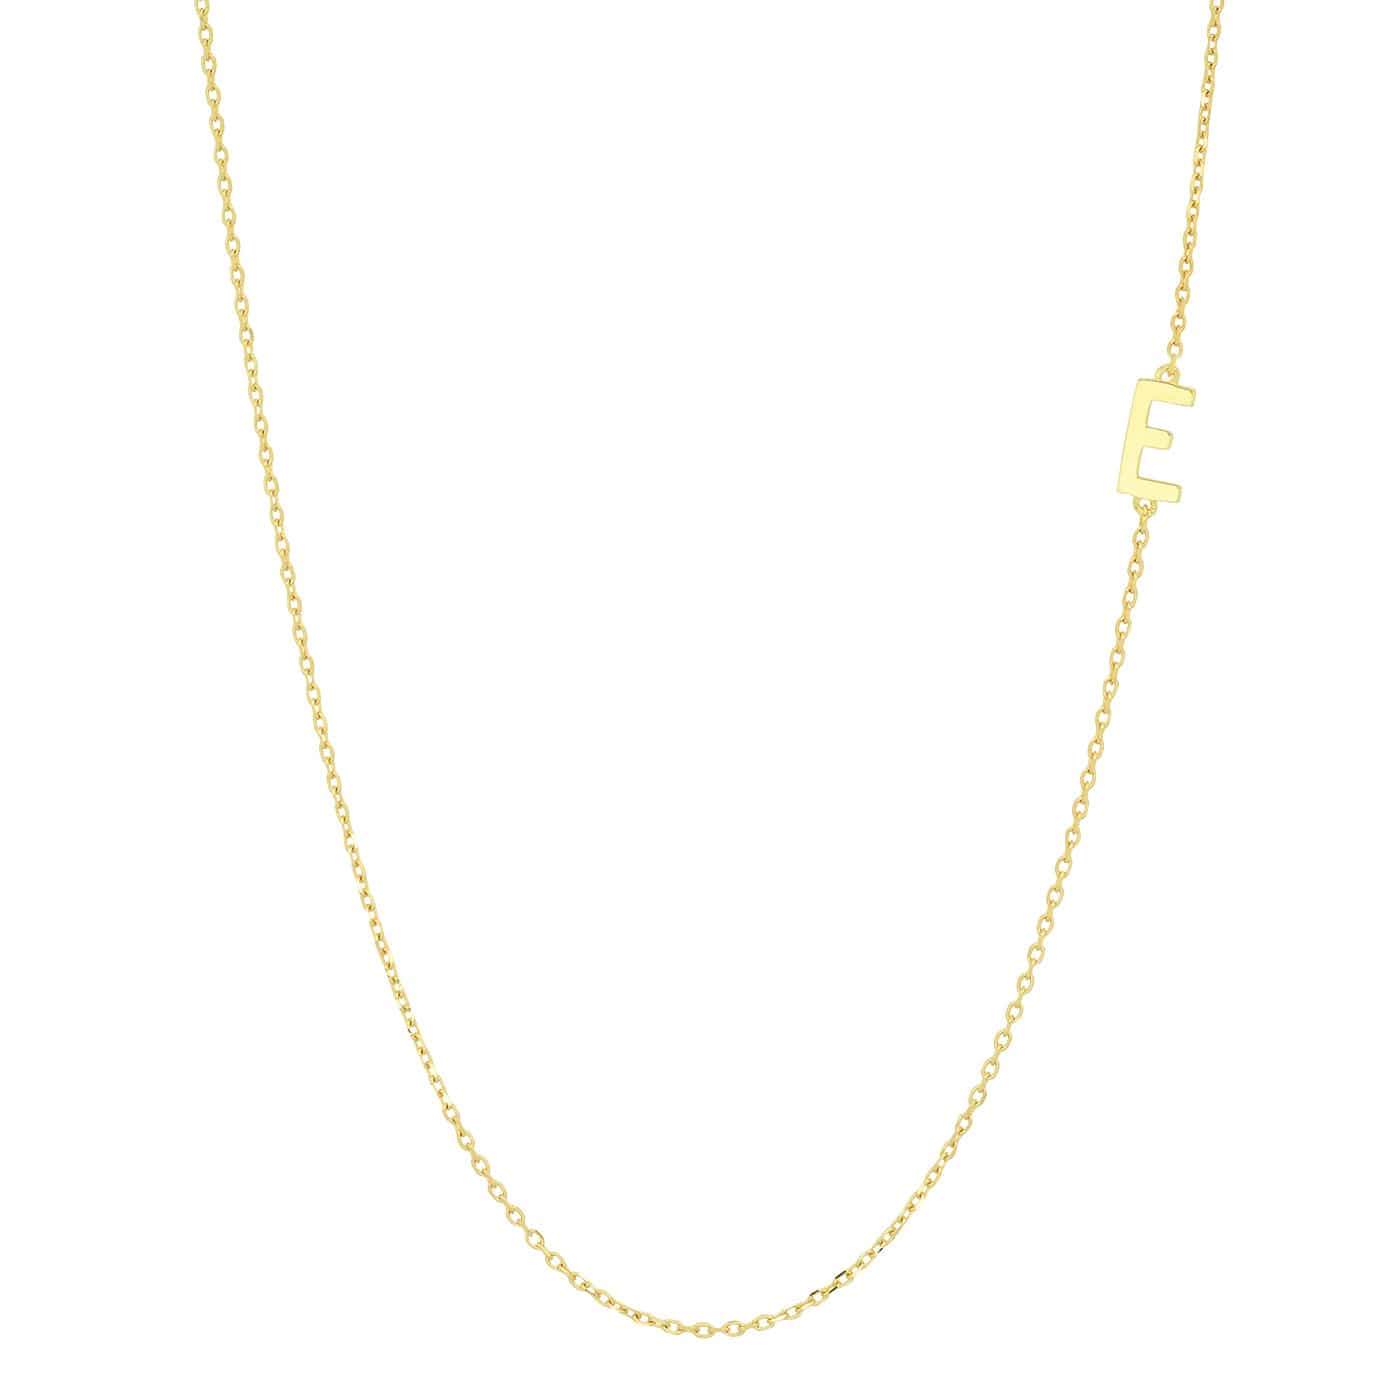 TAI JEWELRY Necklace E 14k Sideways Monogram Necklace